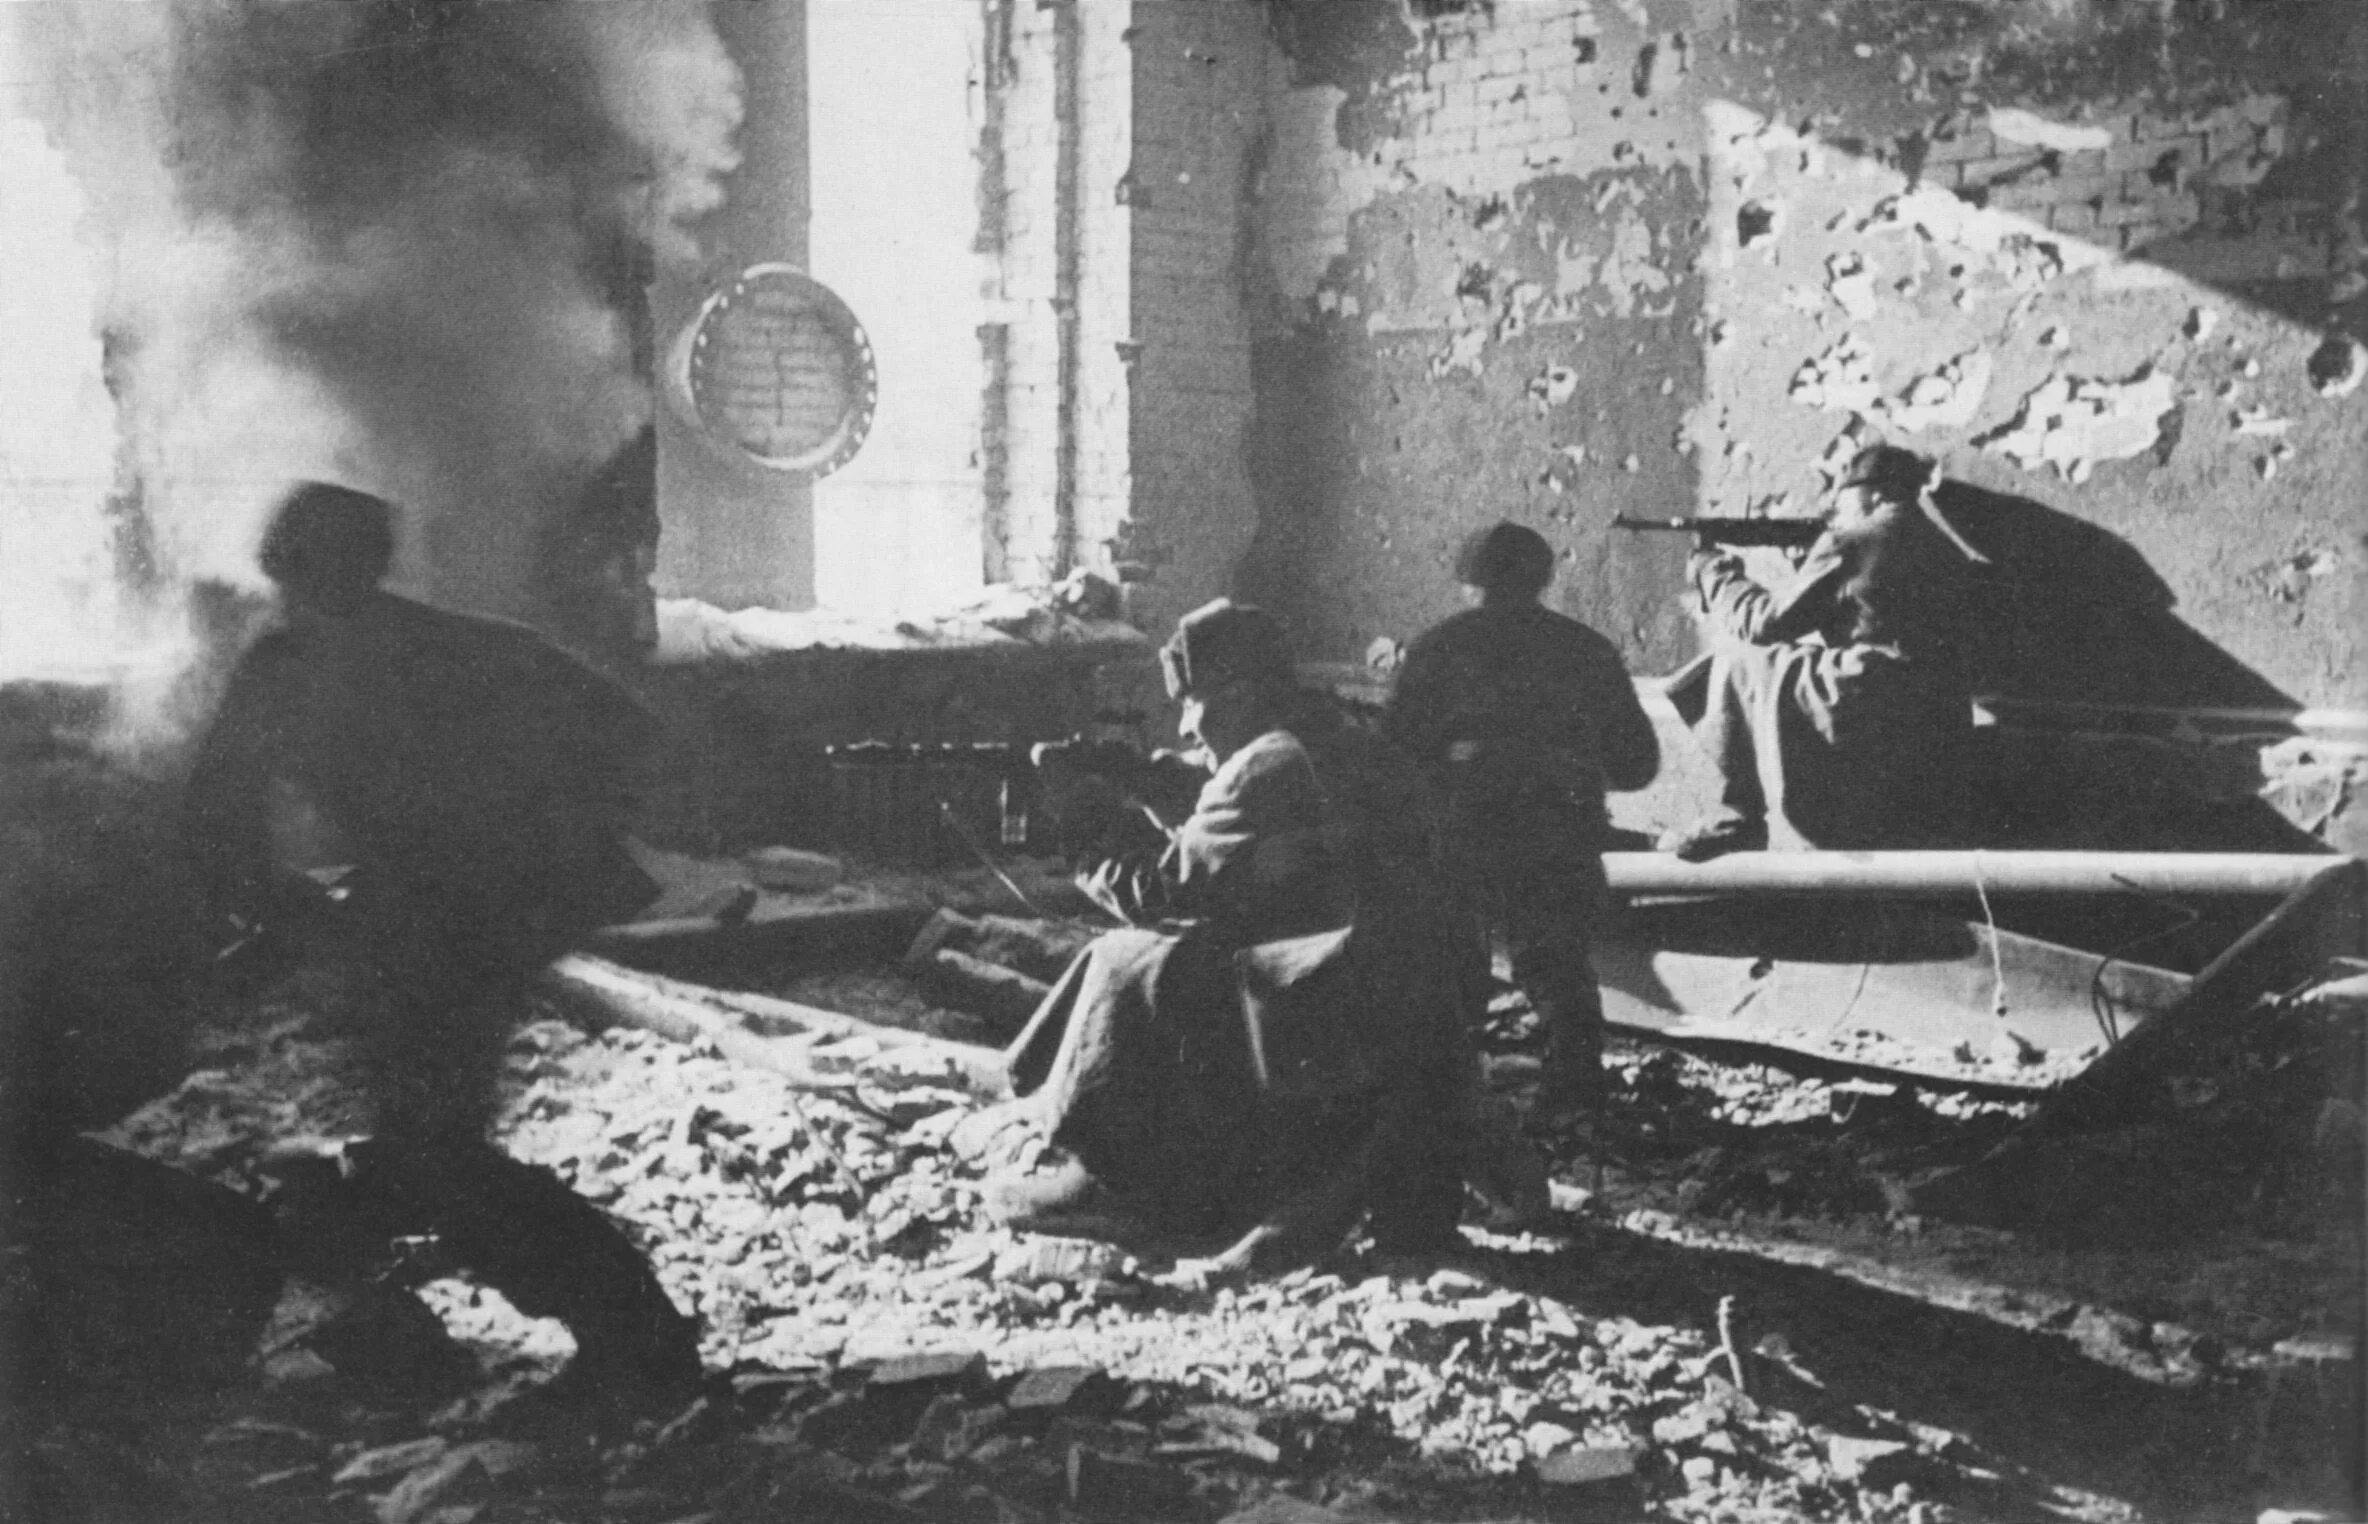 Бои в сталинграде в городе. Сталинградская битва в районе завода красный октябрь. Защита Сталинграда в 1942 году. Октябрь 1942 года Сталинградская битва.